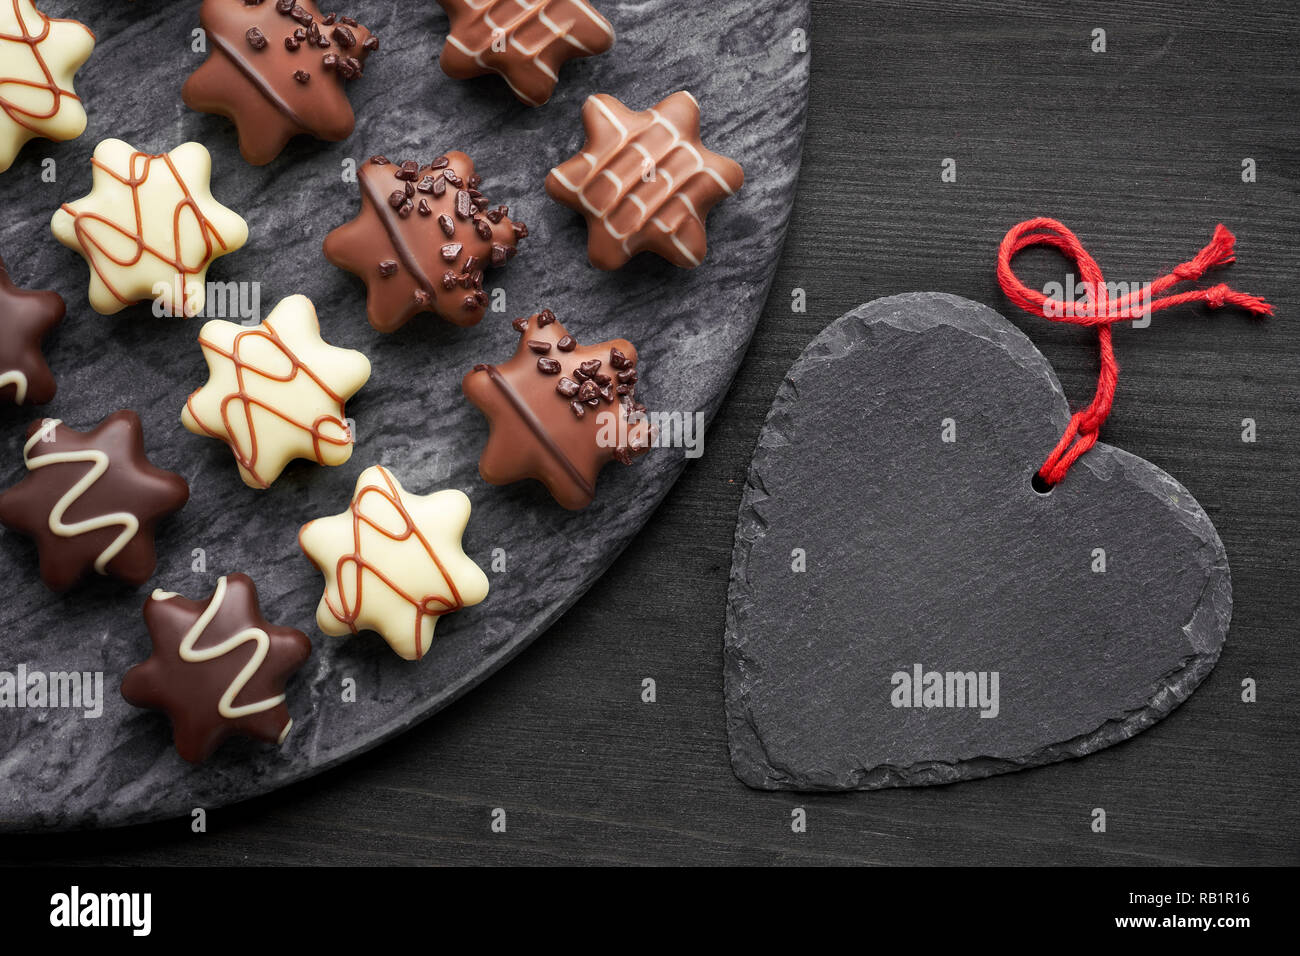 Chocolates en forma de estrella en la placa de piedra gris oscura con corazón negro sobre fondo de textura oscura Foto de stock